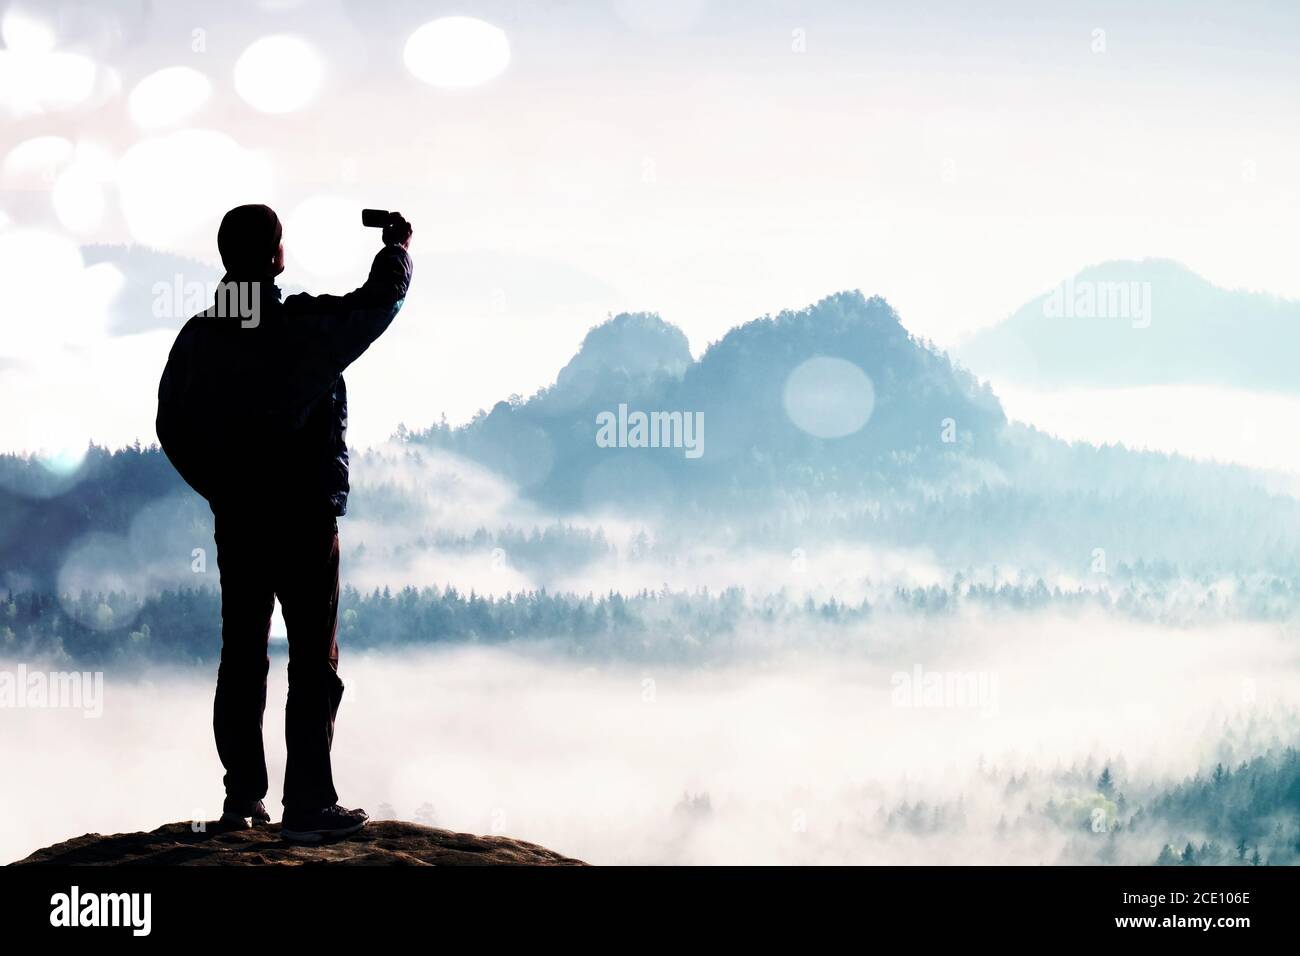 Grain du film. Le grand touriste prend le selfie sur le sommet au-dessus de la vallée. Photographie sur smartphone Banque D'Images